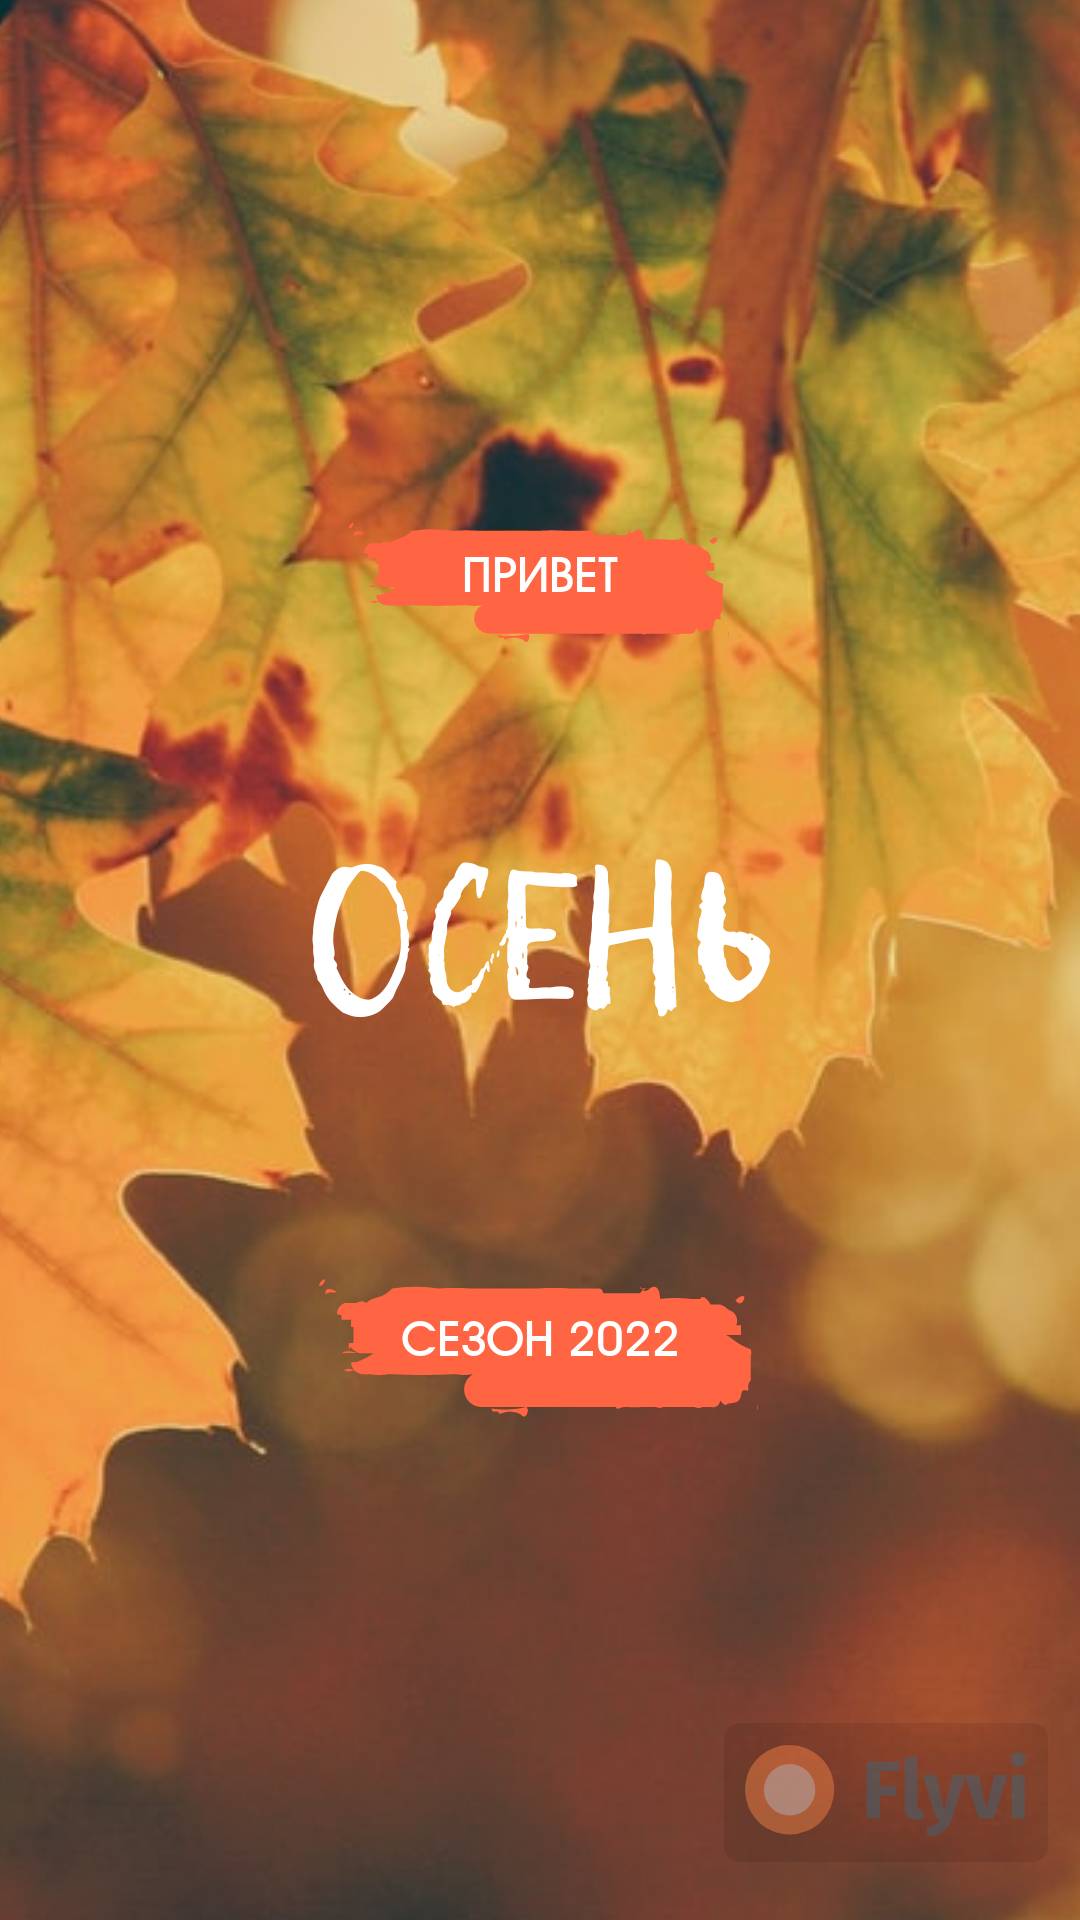 Осенняя сторис с кленовыми листьями в желтых и оранжевых цветах для сторис Инстаграм